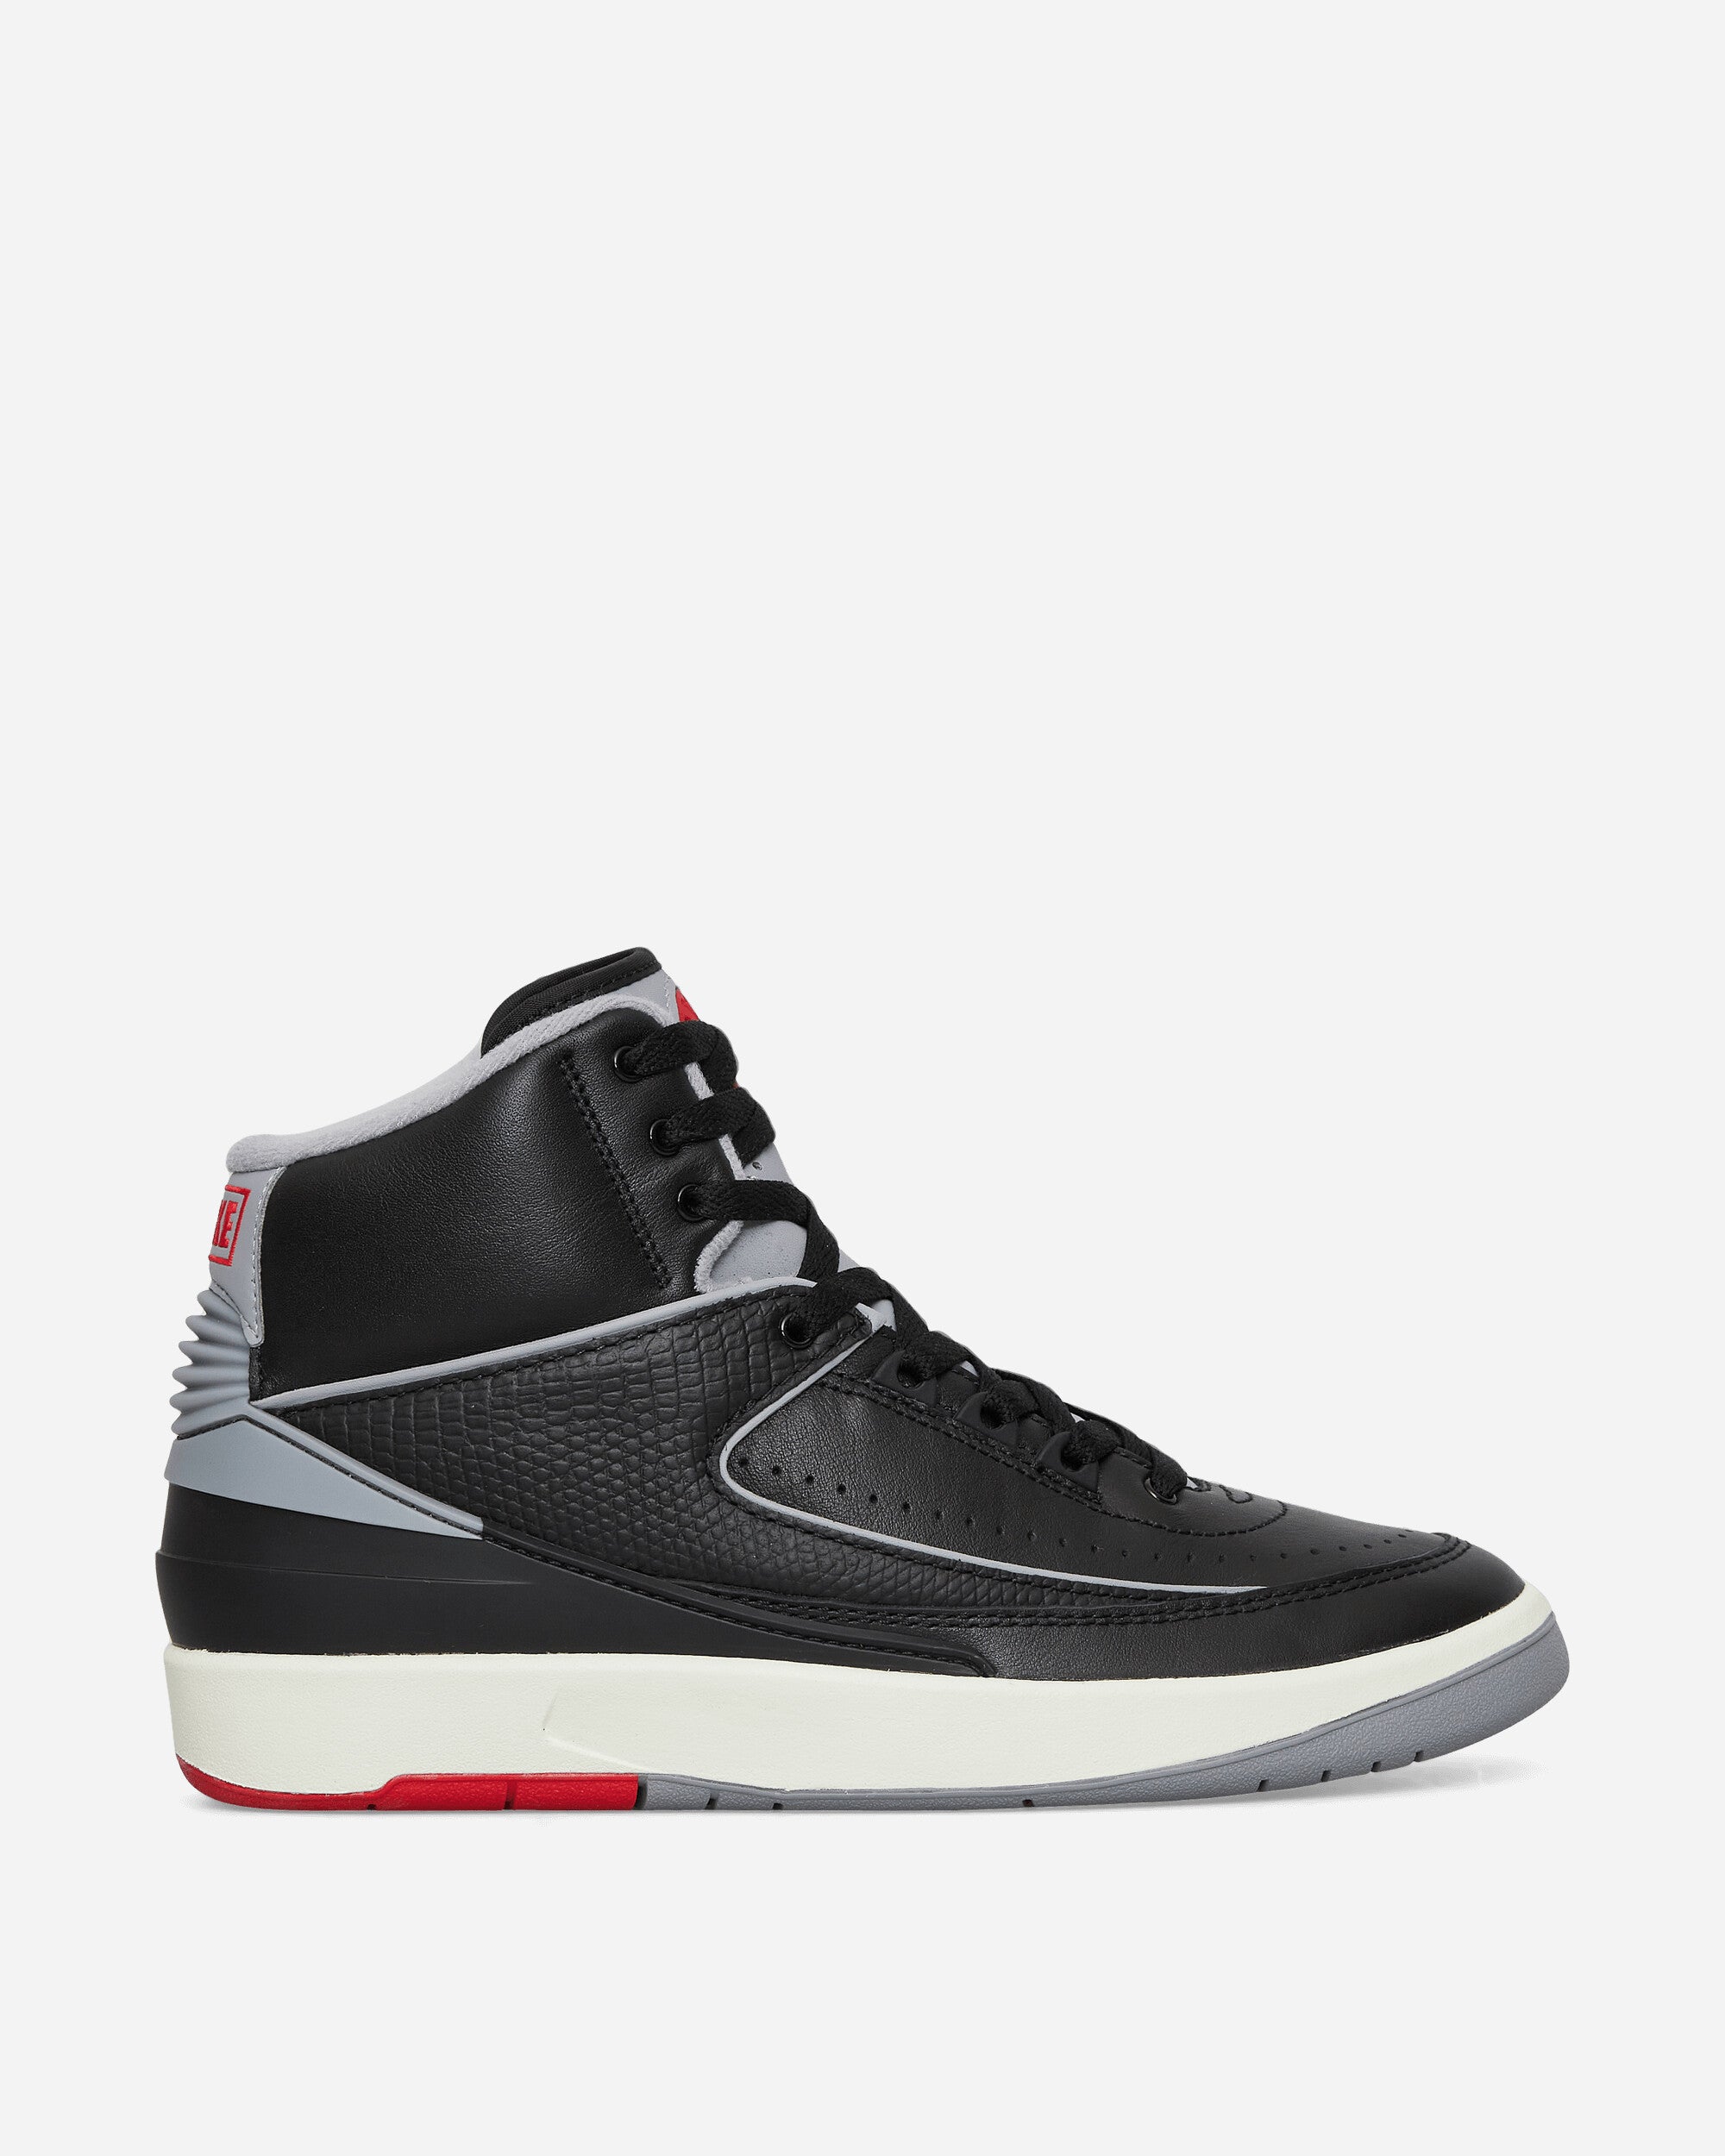 Air Jordan 2 Retro Sneakers Black / Cement Grey